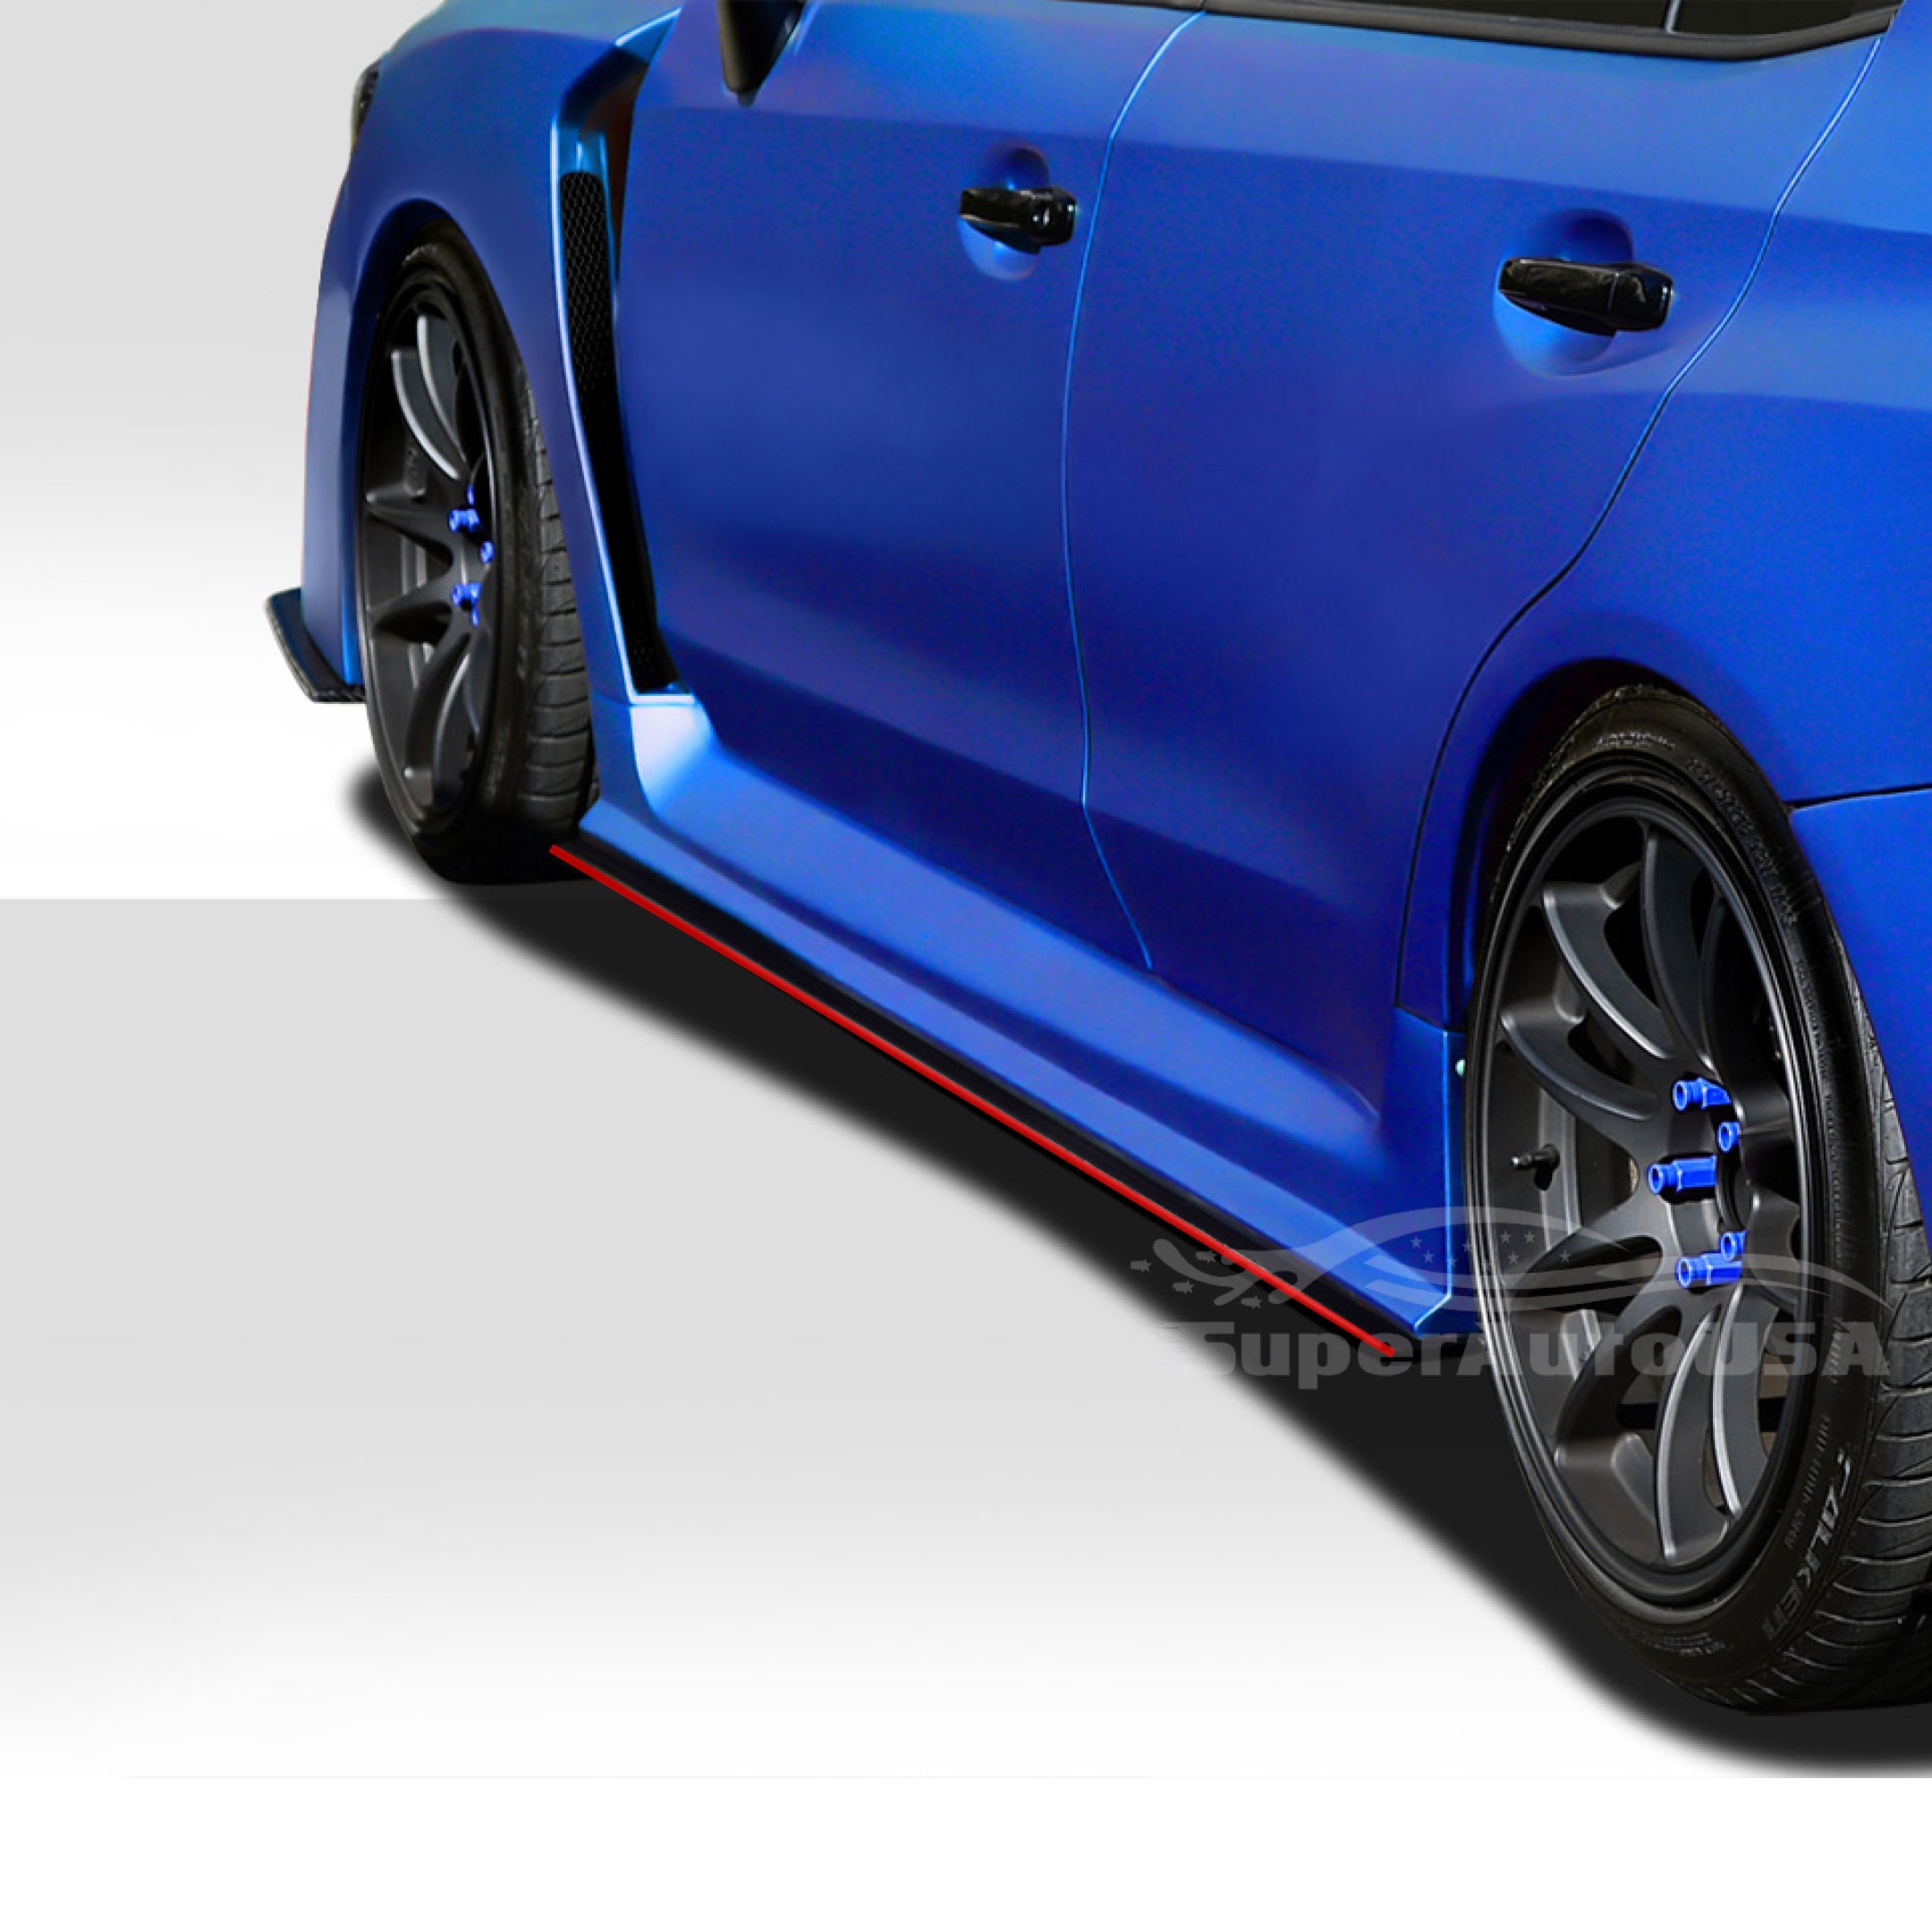 Ajuste 2015-2021 Subaru Impreza WRX STI faldones laterales cuerpo y parachoques delantero juego de alerón (borde negro brillante y rojo)